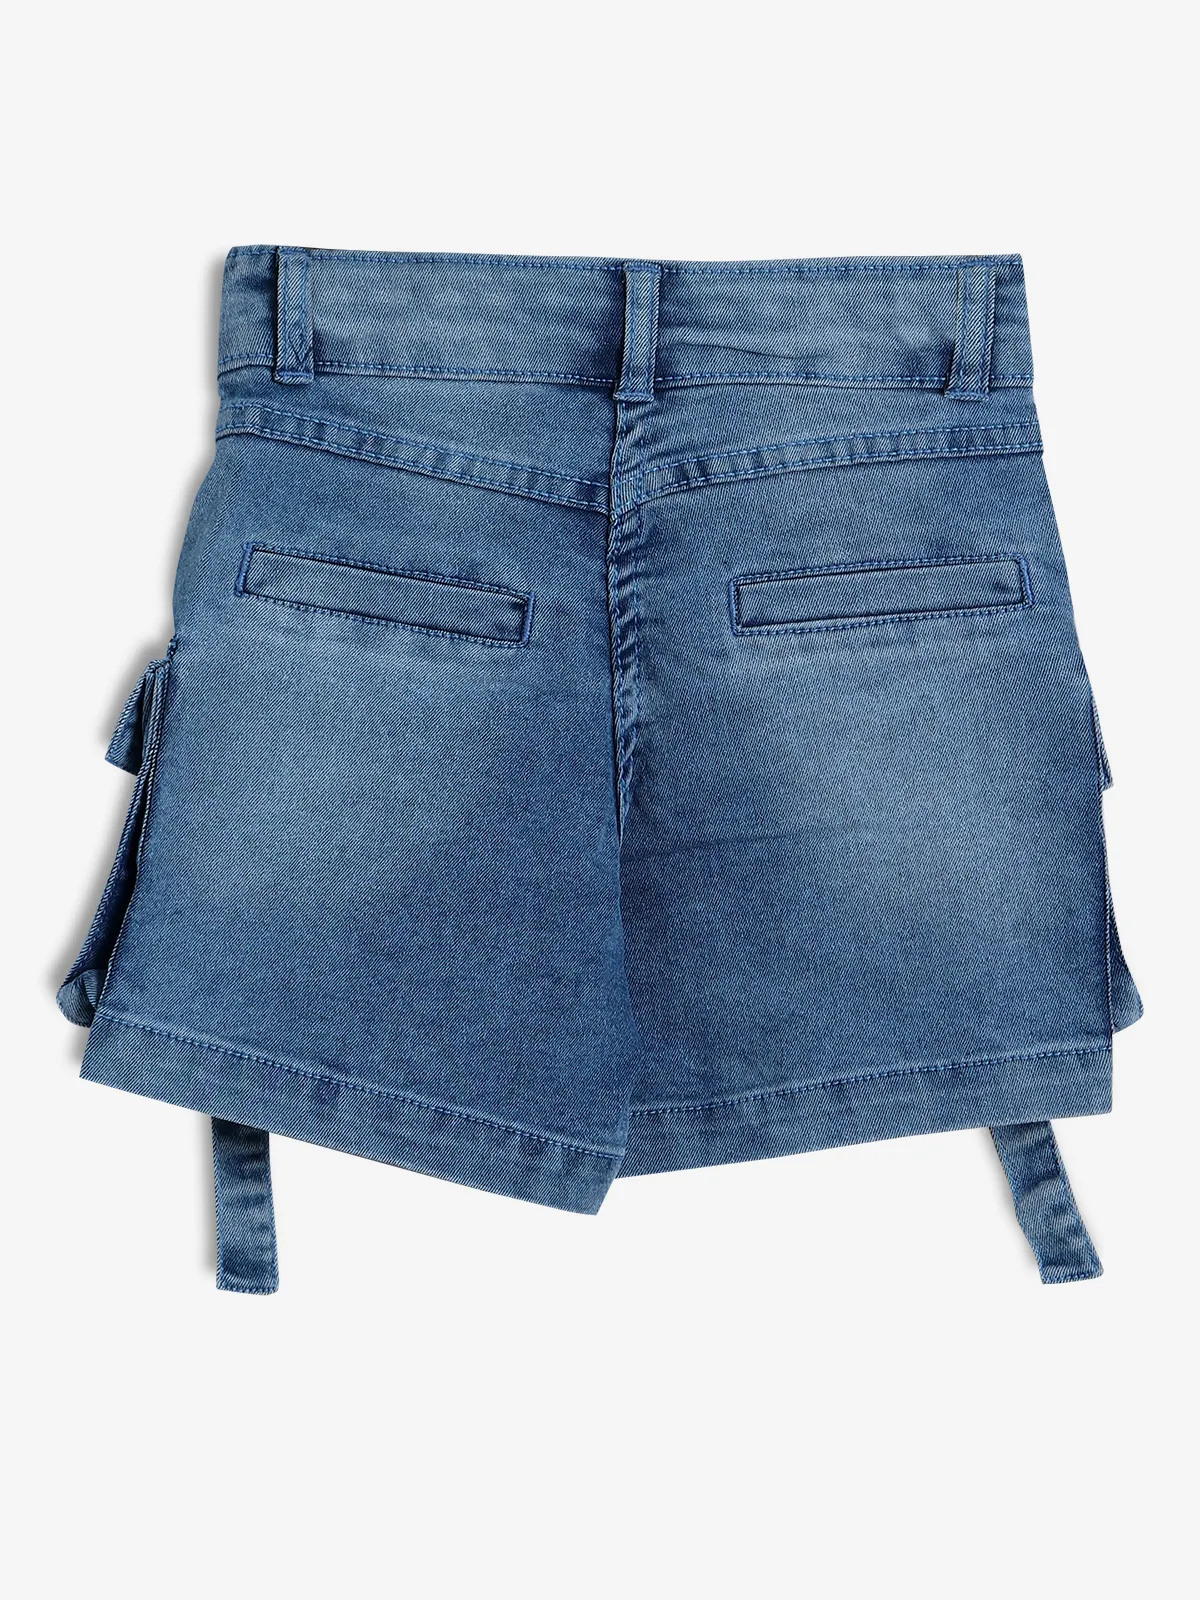 BARBIE blue denim shorts